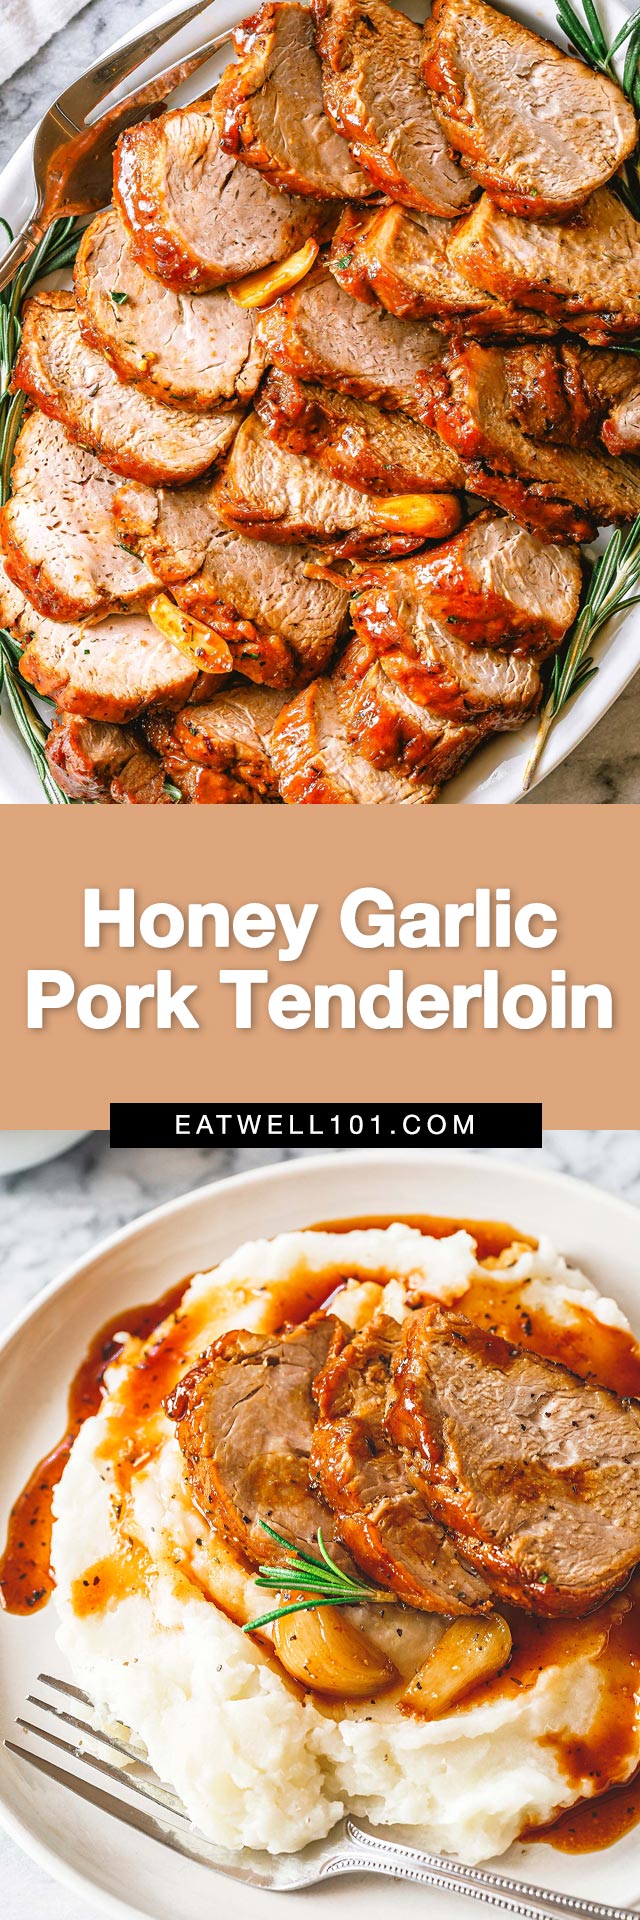 Honey Garlic Pork Tenderloin - #pork #tenderloin #recipe #eatwell101 - How to make pork tenderloin cooked with the most incredible honey garlic sauce! The best easy pork tenderloin recipe for an easy dinner idea.